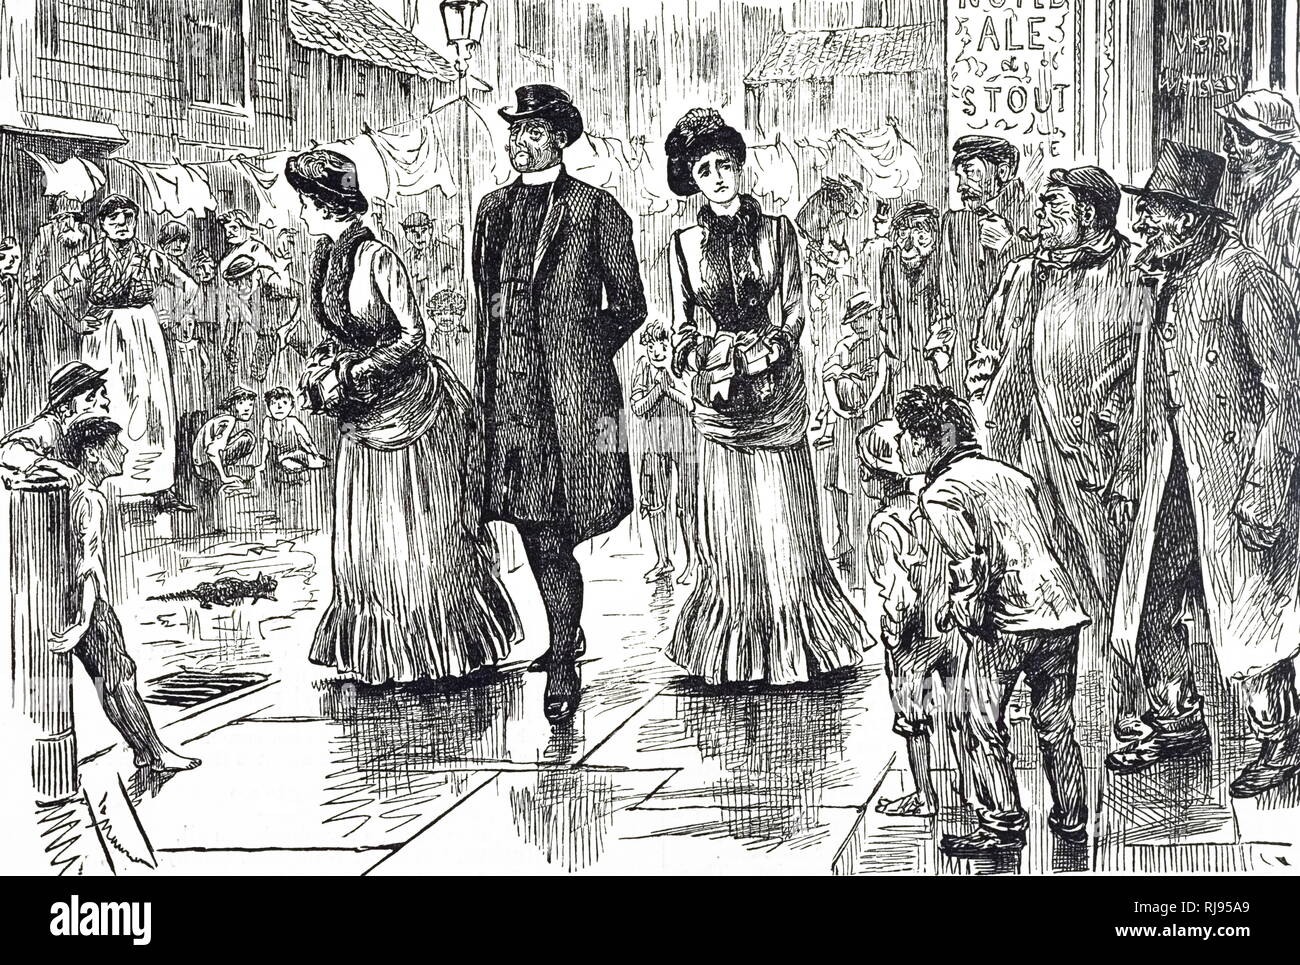 Ein Cartoon mit zwei wohlhabende Frauen Untersuchung der Lebensbedingungen der weniger Aufträge. Mit Ill. von George Du Maurier (1834-1896) eine französisch-britische Zeichner und Autor. Vom 19. Jahrhundert Stockfoto